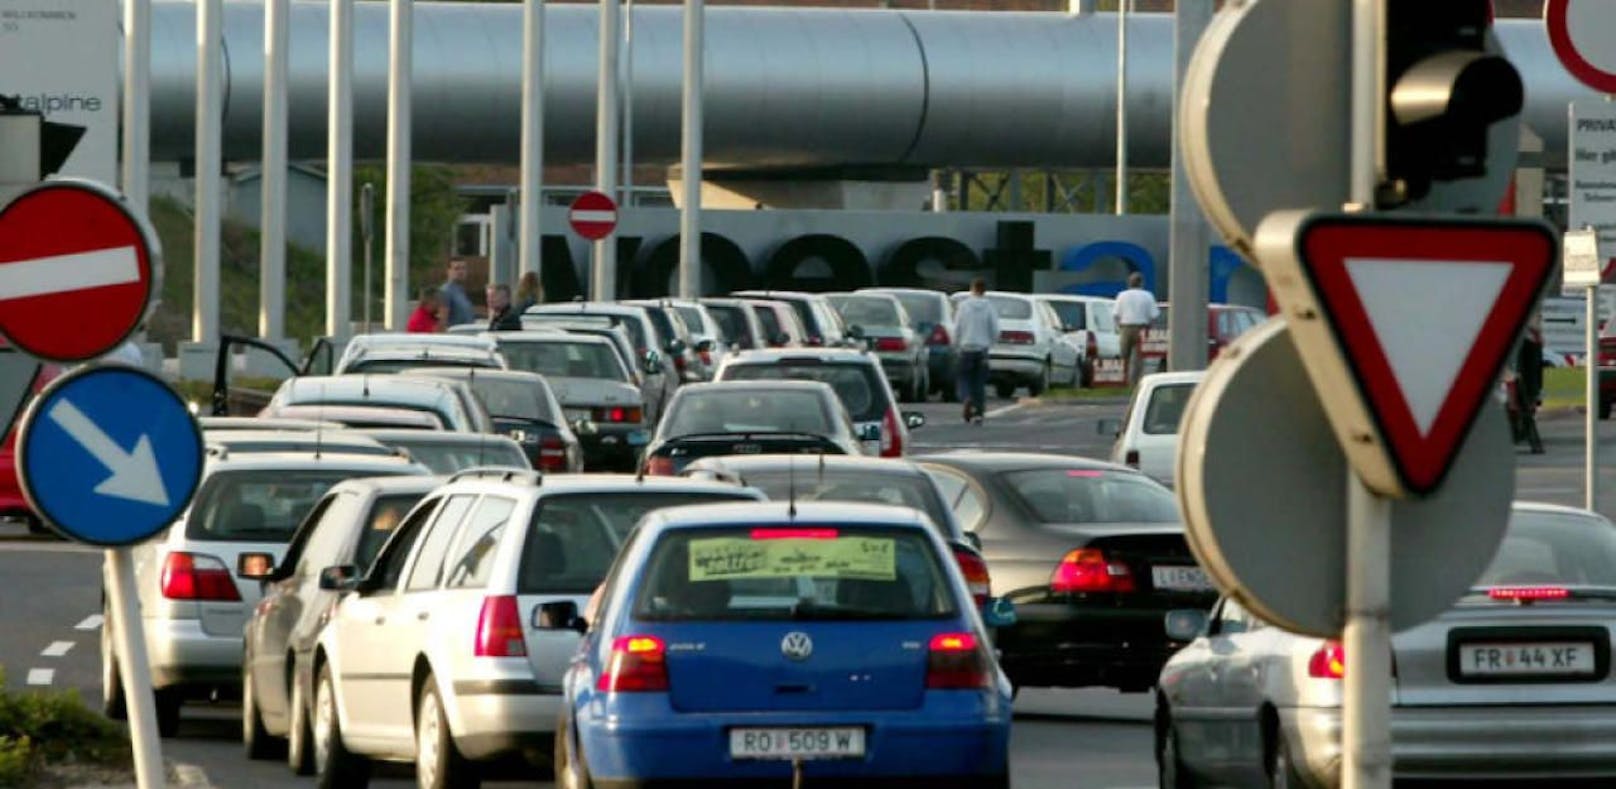 Der starke Auto-Verkehr ist auch weiterhin das Hauptproblem für die Linzer Luft.